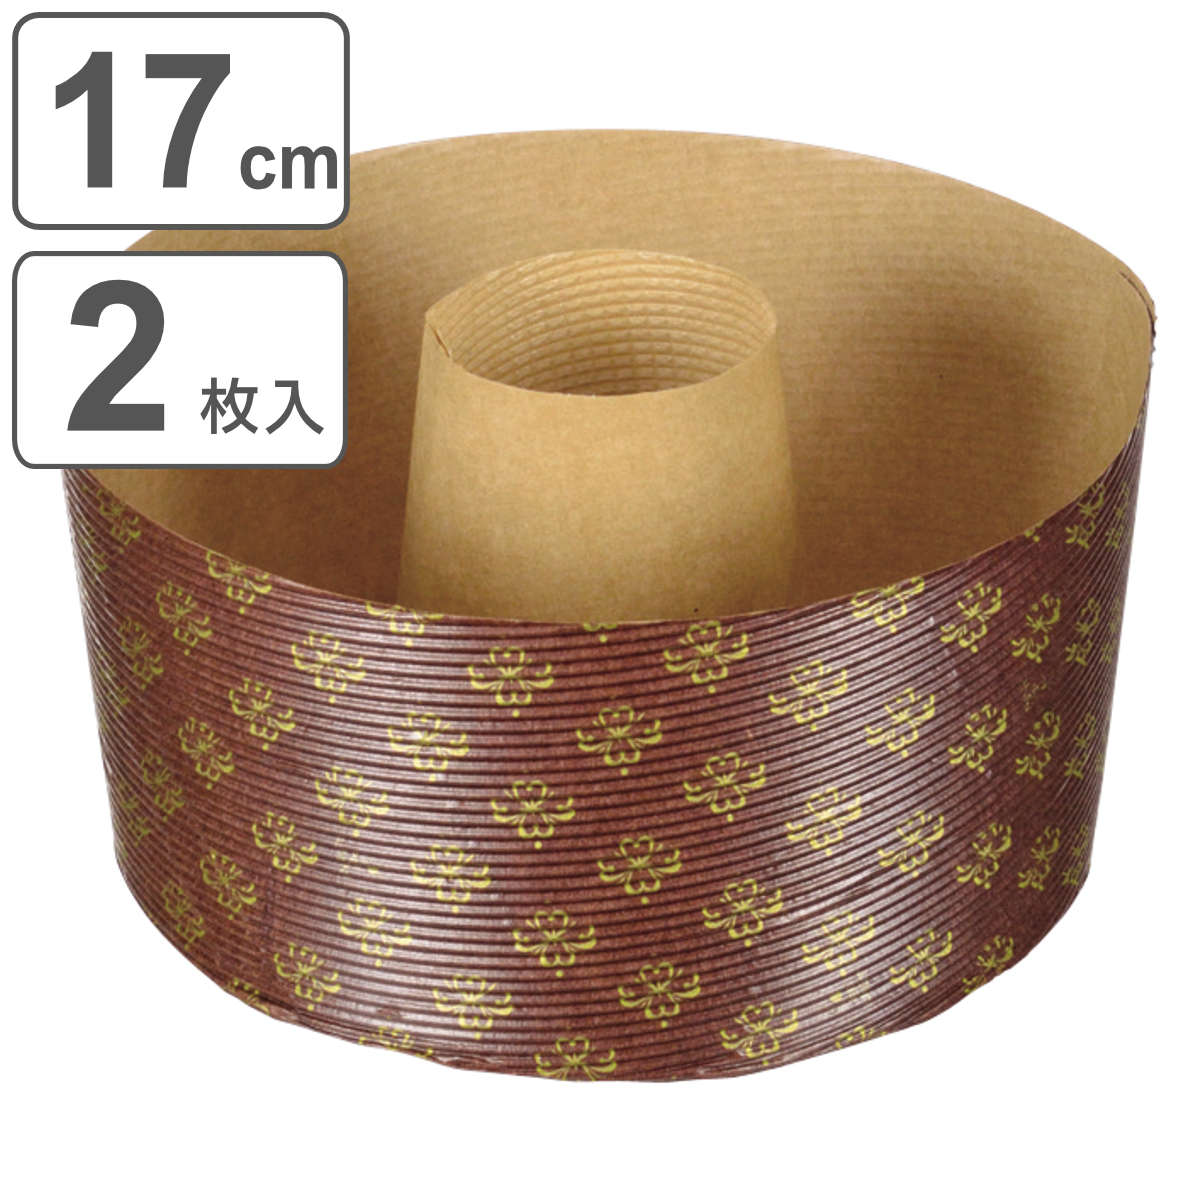 シフォンケーキ型 17cm ラフィネ 紙